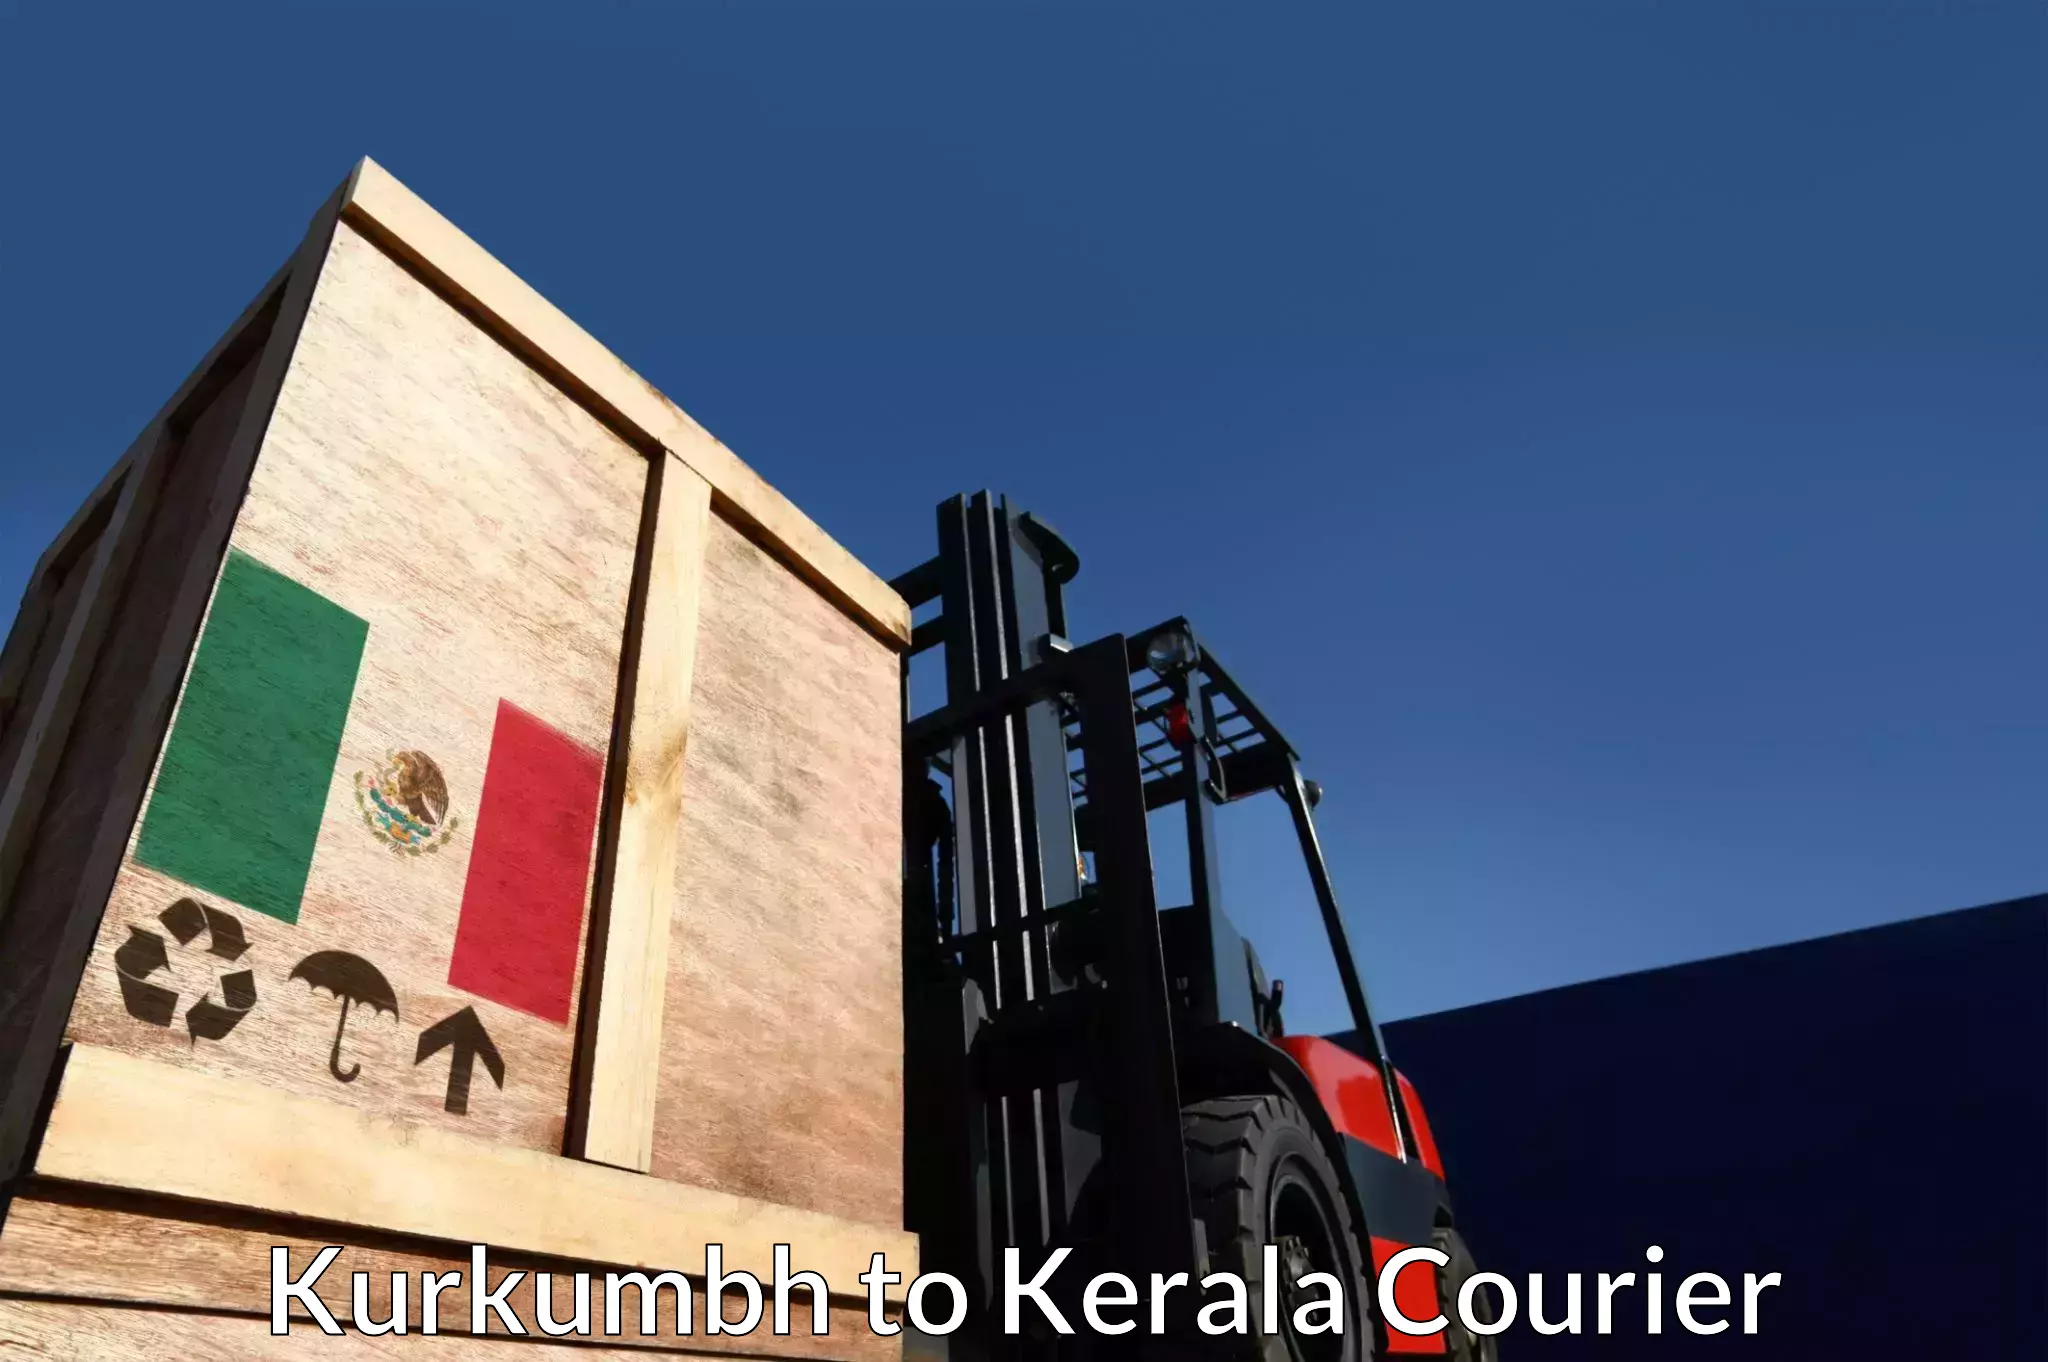 On-call courier service Kurkumbh to Munnar